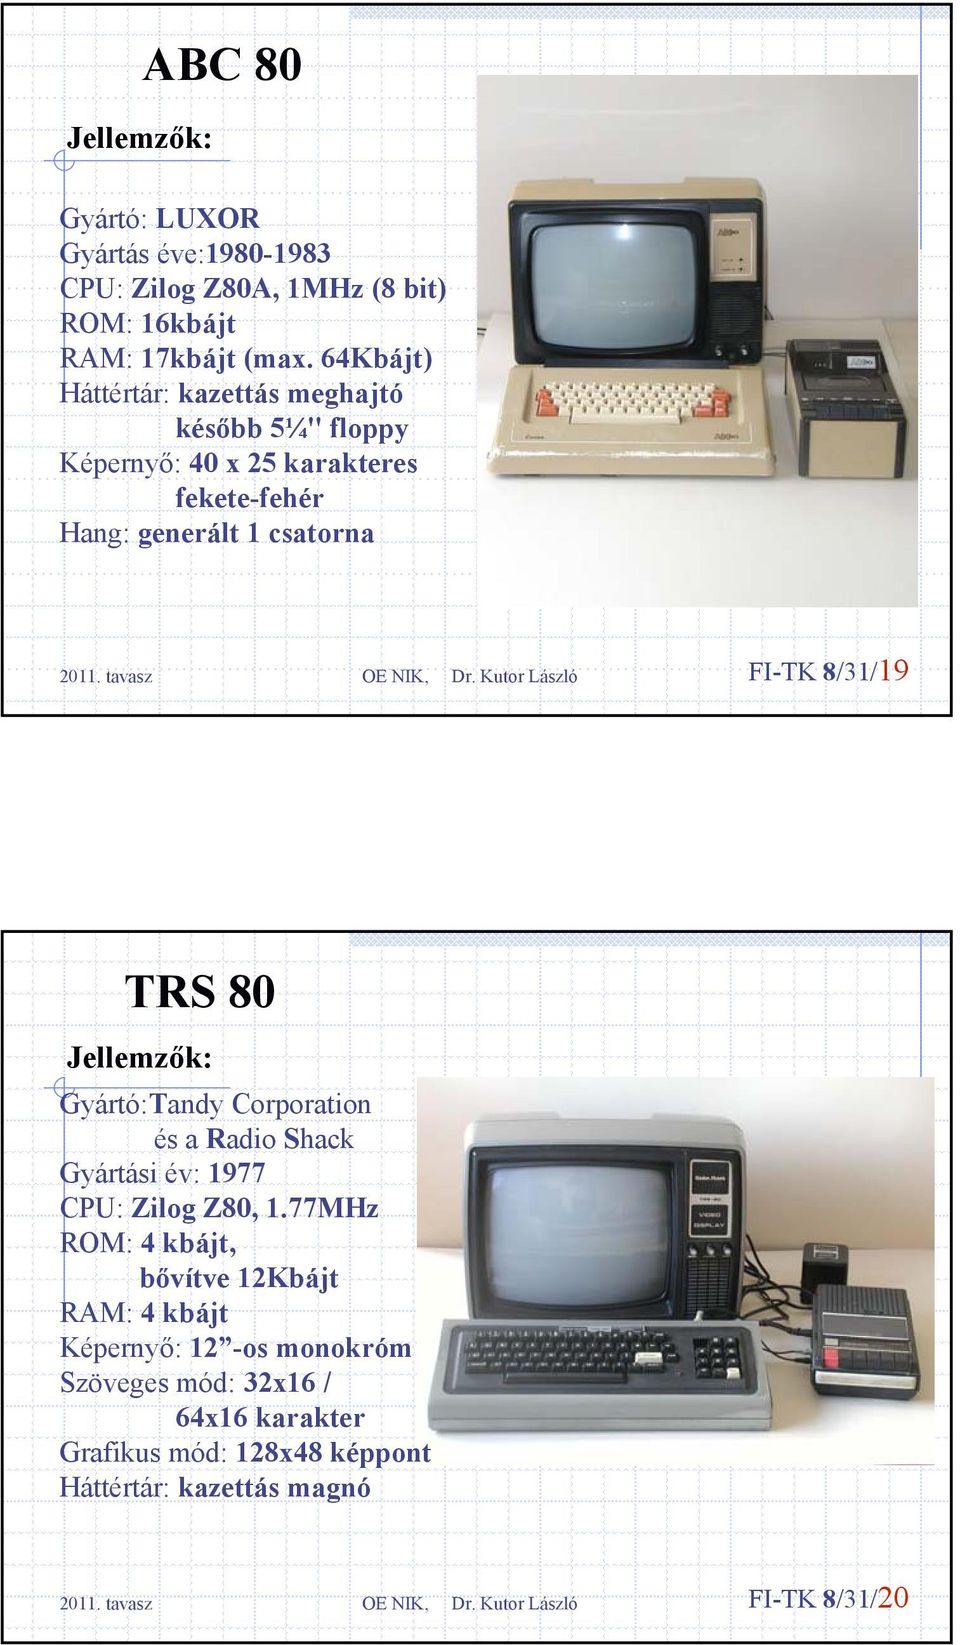 FI-TK 8/31/19 TRS 80 Gyártó:Tandy Corporation és a Radio Shack Gyártási év: 1977 CPU: Zilog Z80, 1.